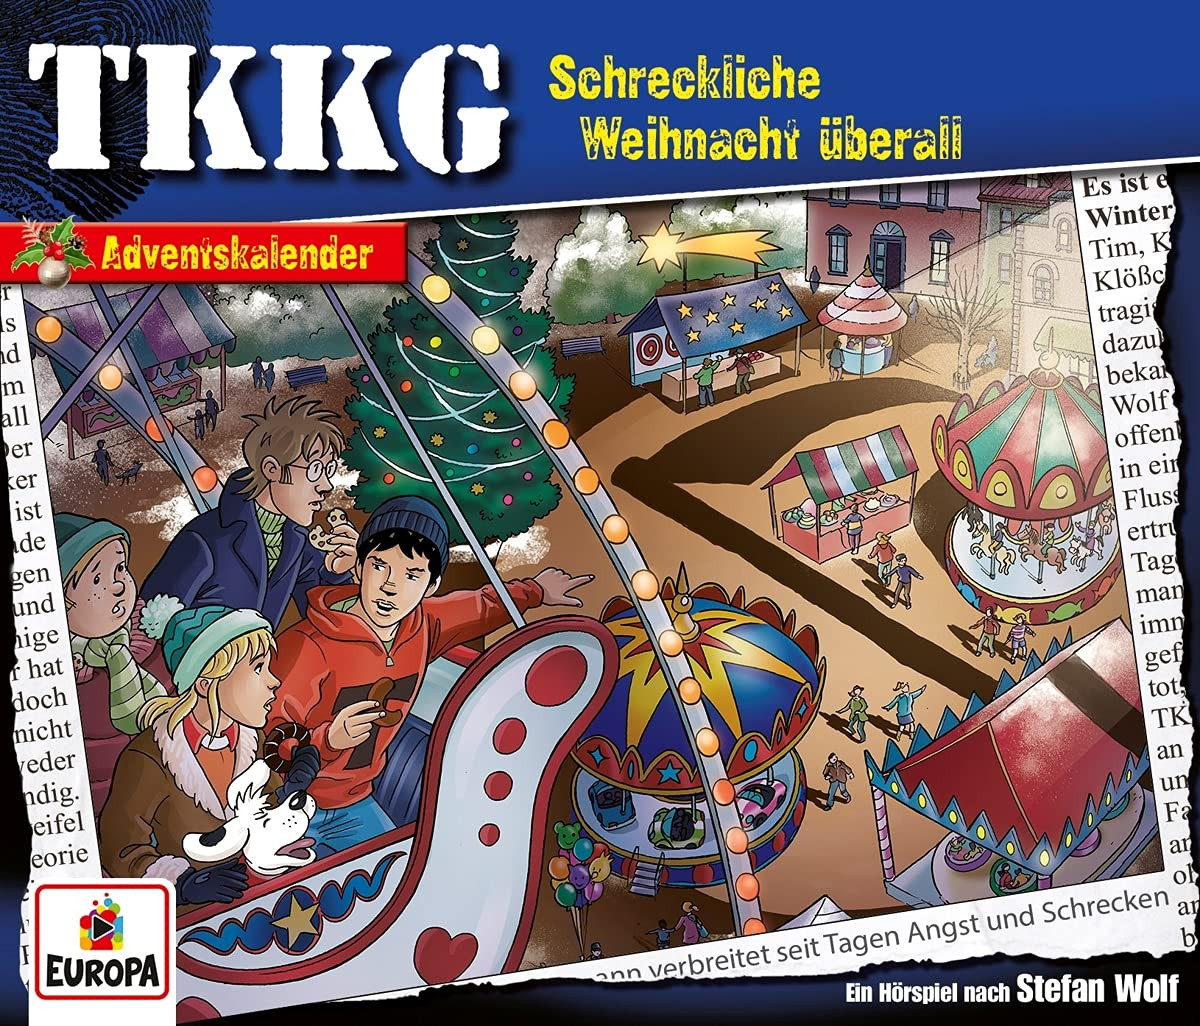 TKKG - Schreckliche Weihnacht überall (Adventskalender)